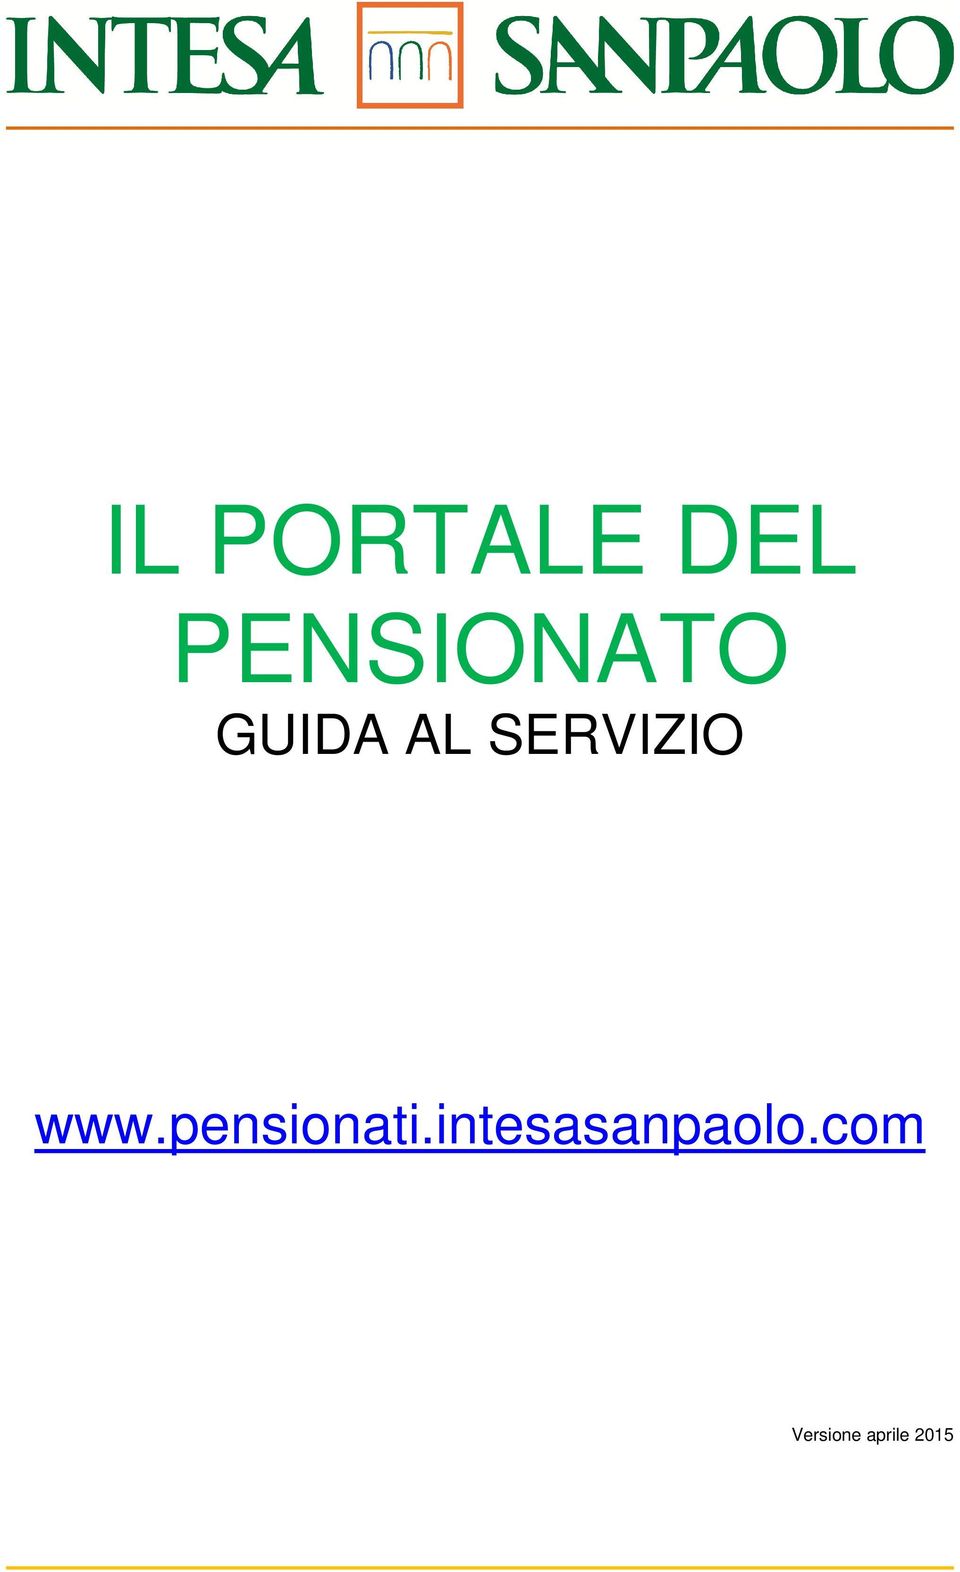 SERVIZIO www.pensionati.